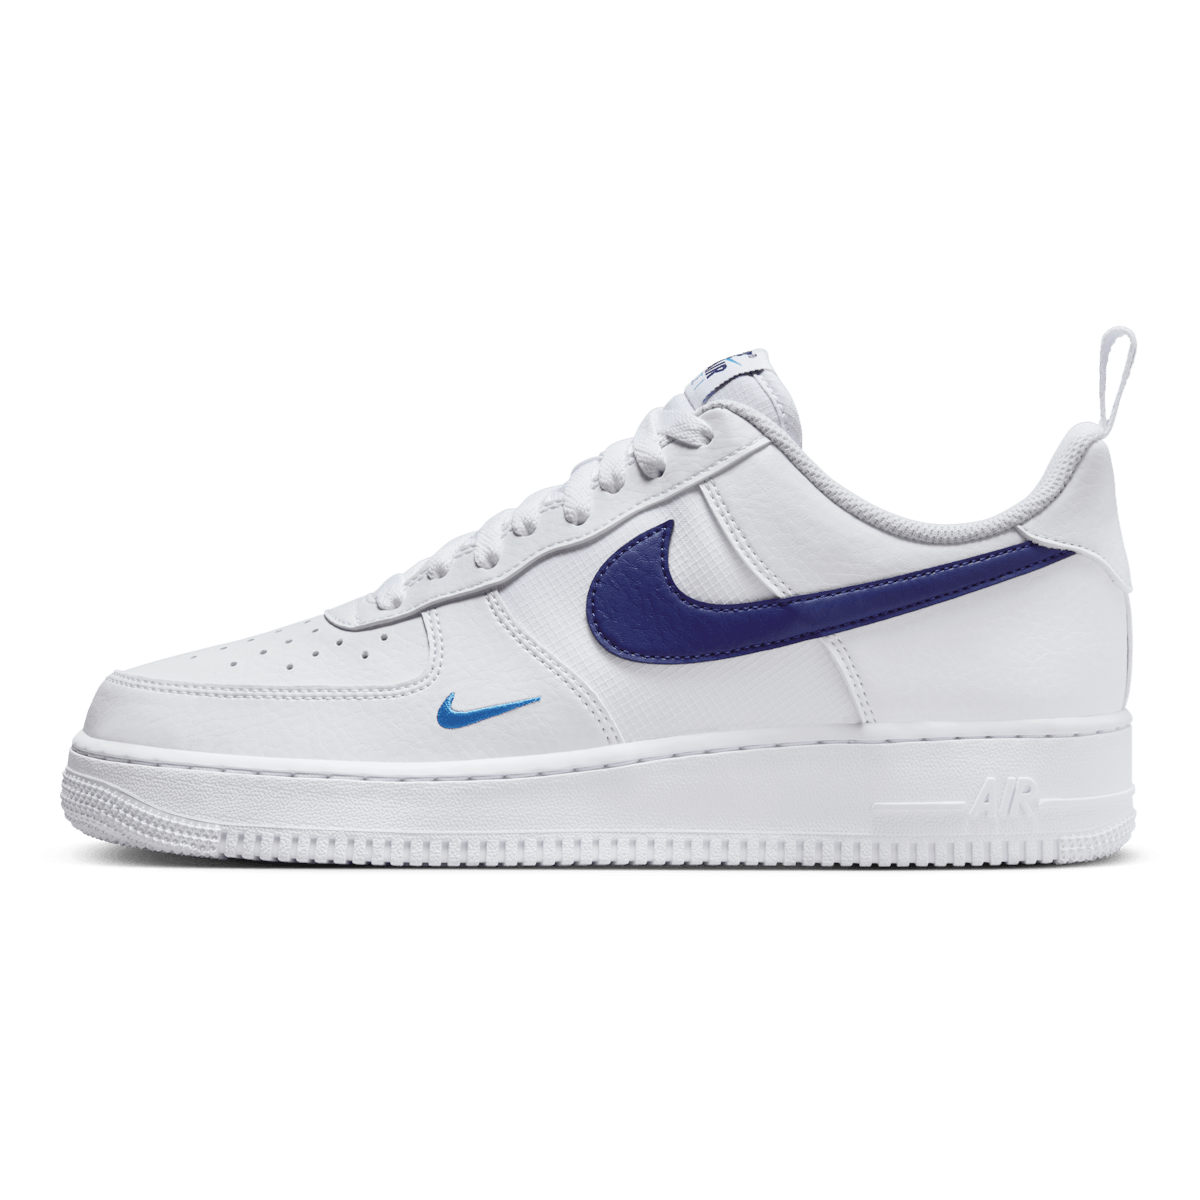 Nike Air Force 1 '07 "White Blue"